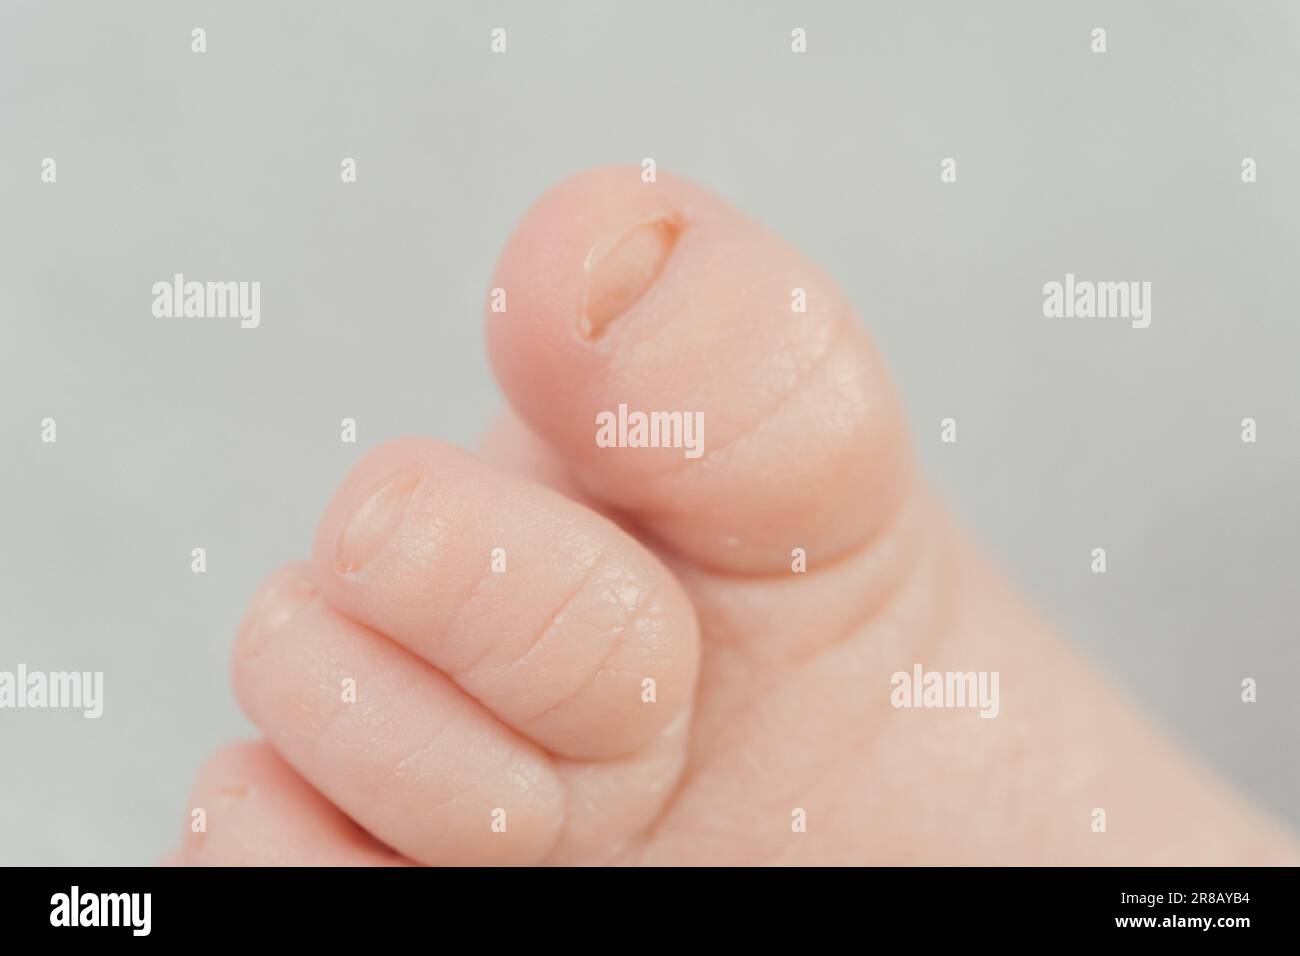 Immagine ravvicinata delle dita dei piedi più piccole di un neonato, con particolare attenzione al dettaglio della pelle delicata Foto Stock